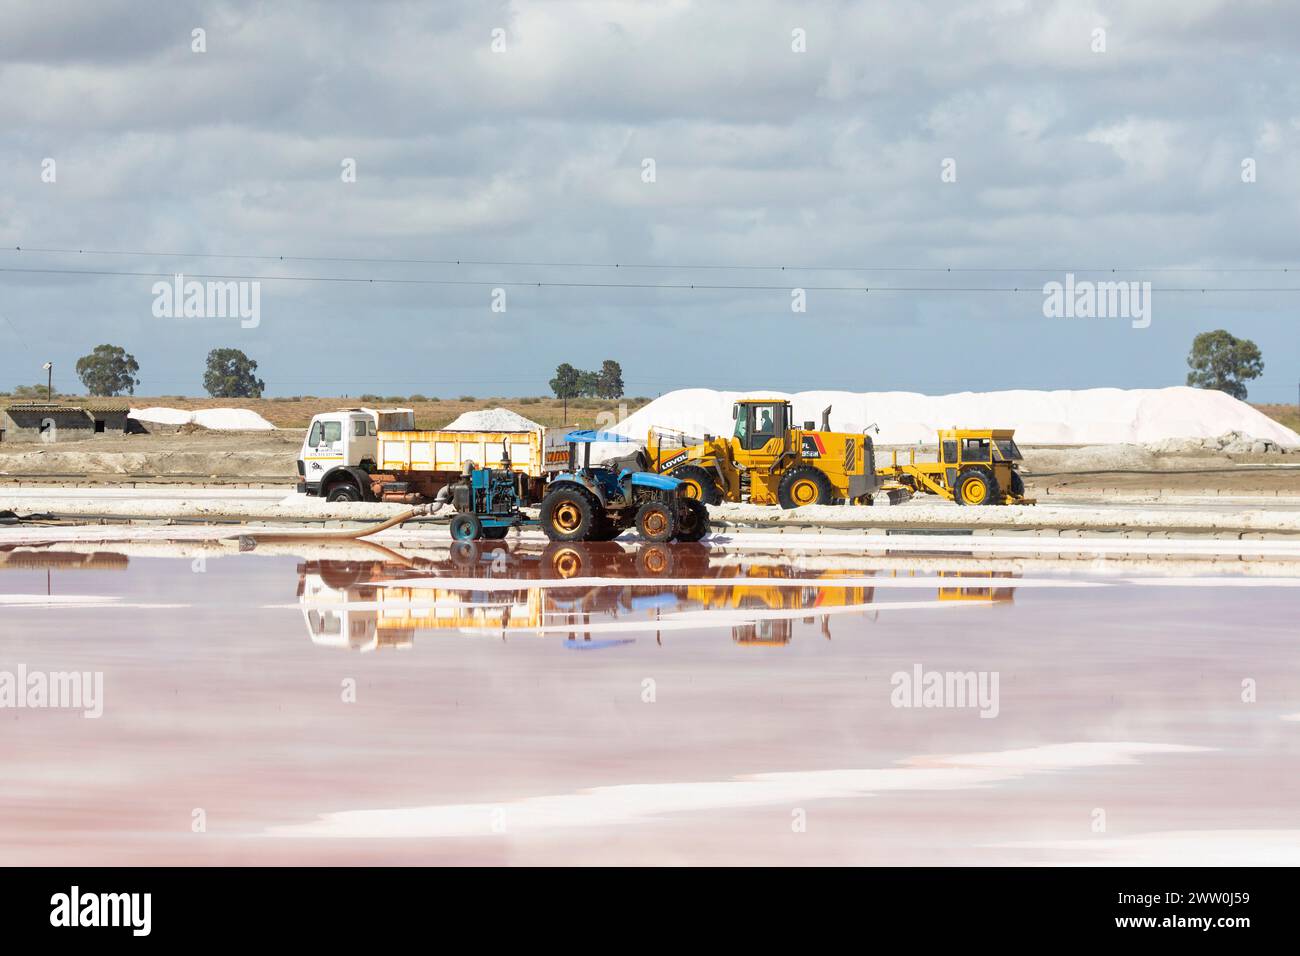 Récolte de sel marin commercial dans des marais d'évaporation, marais salants Kliphoek, Velddrif, côte ouest, Afrique du Sud Banque D'Images